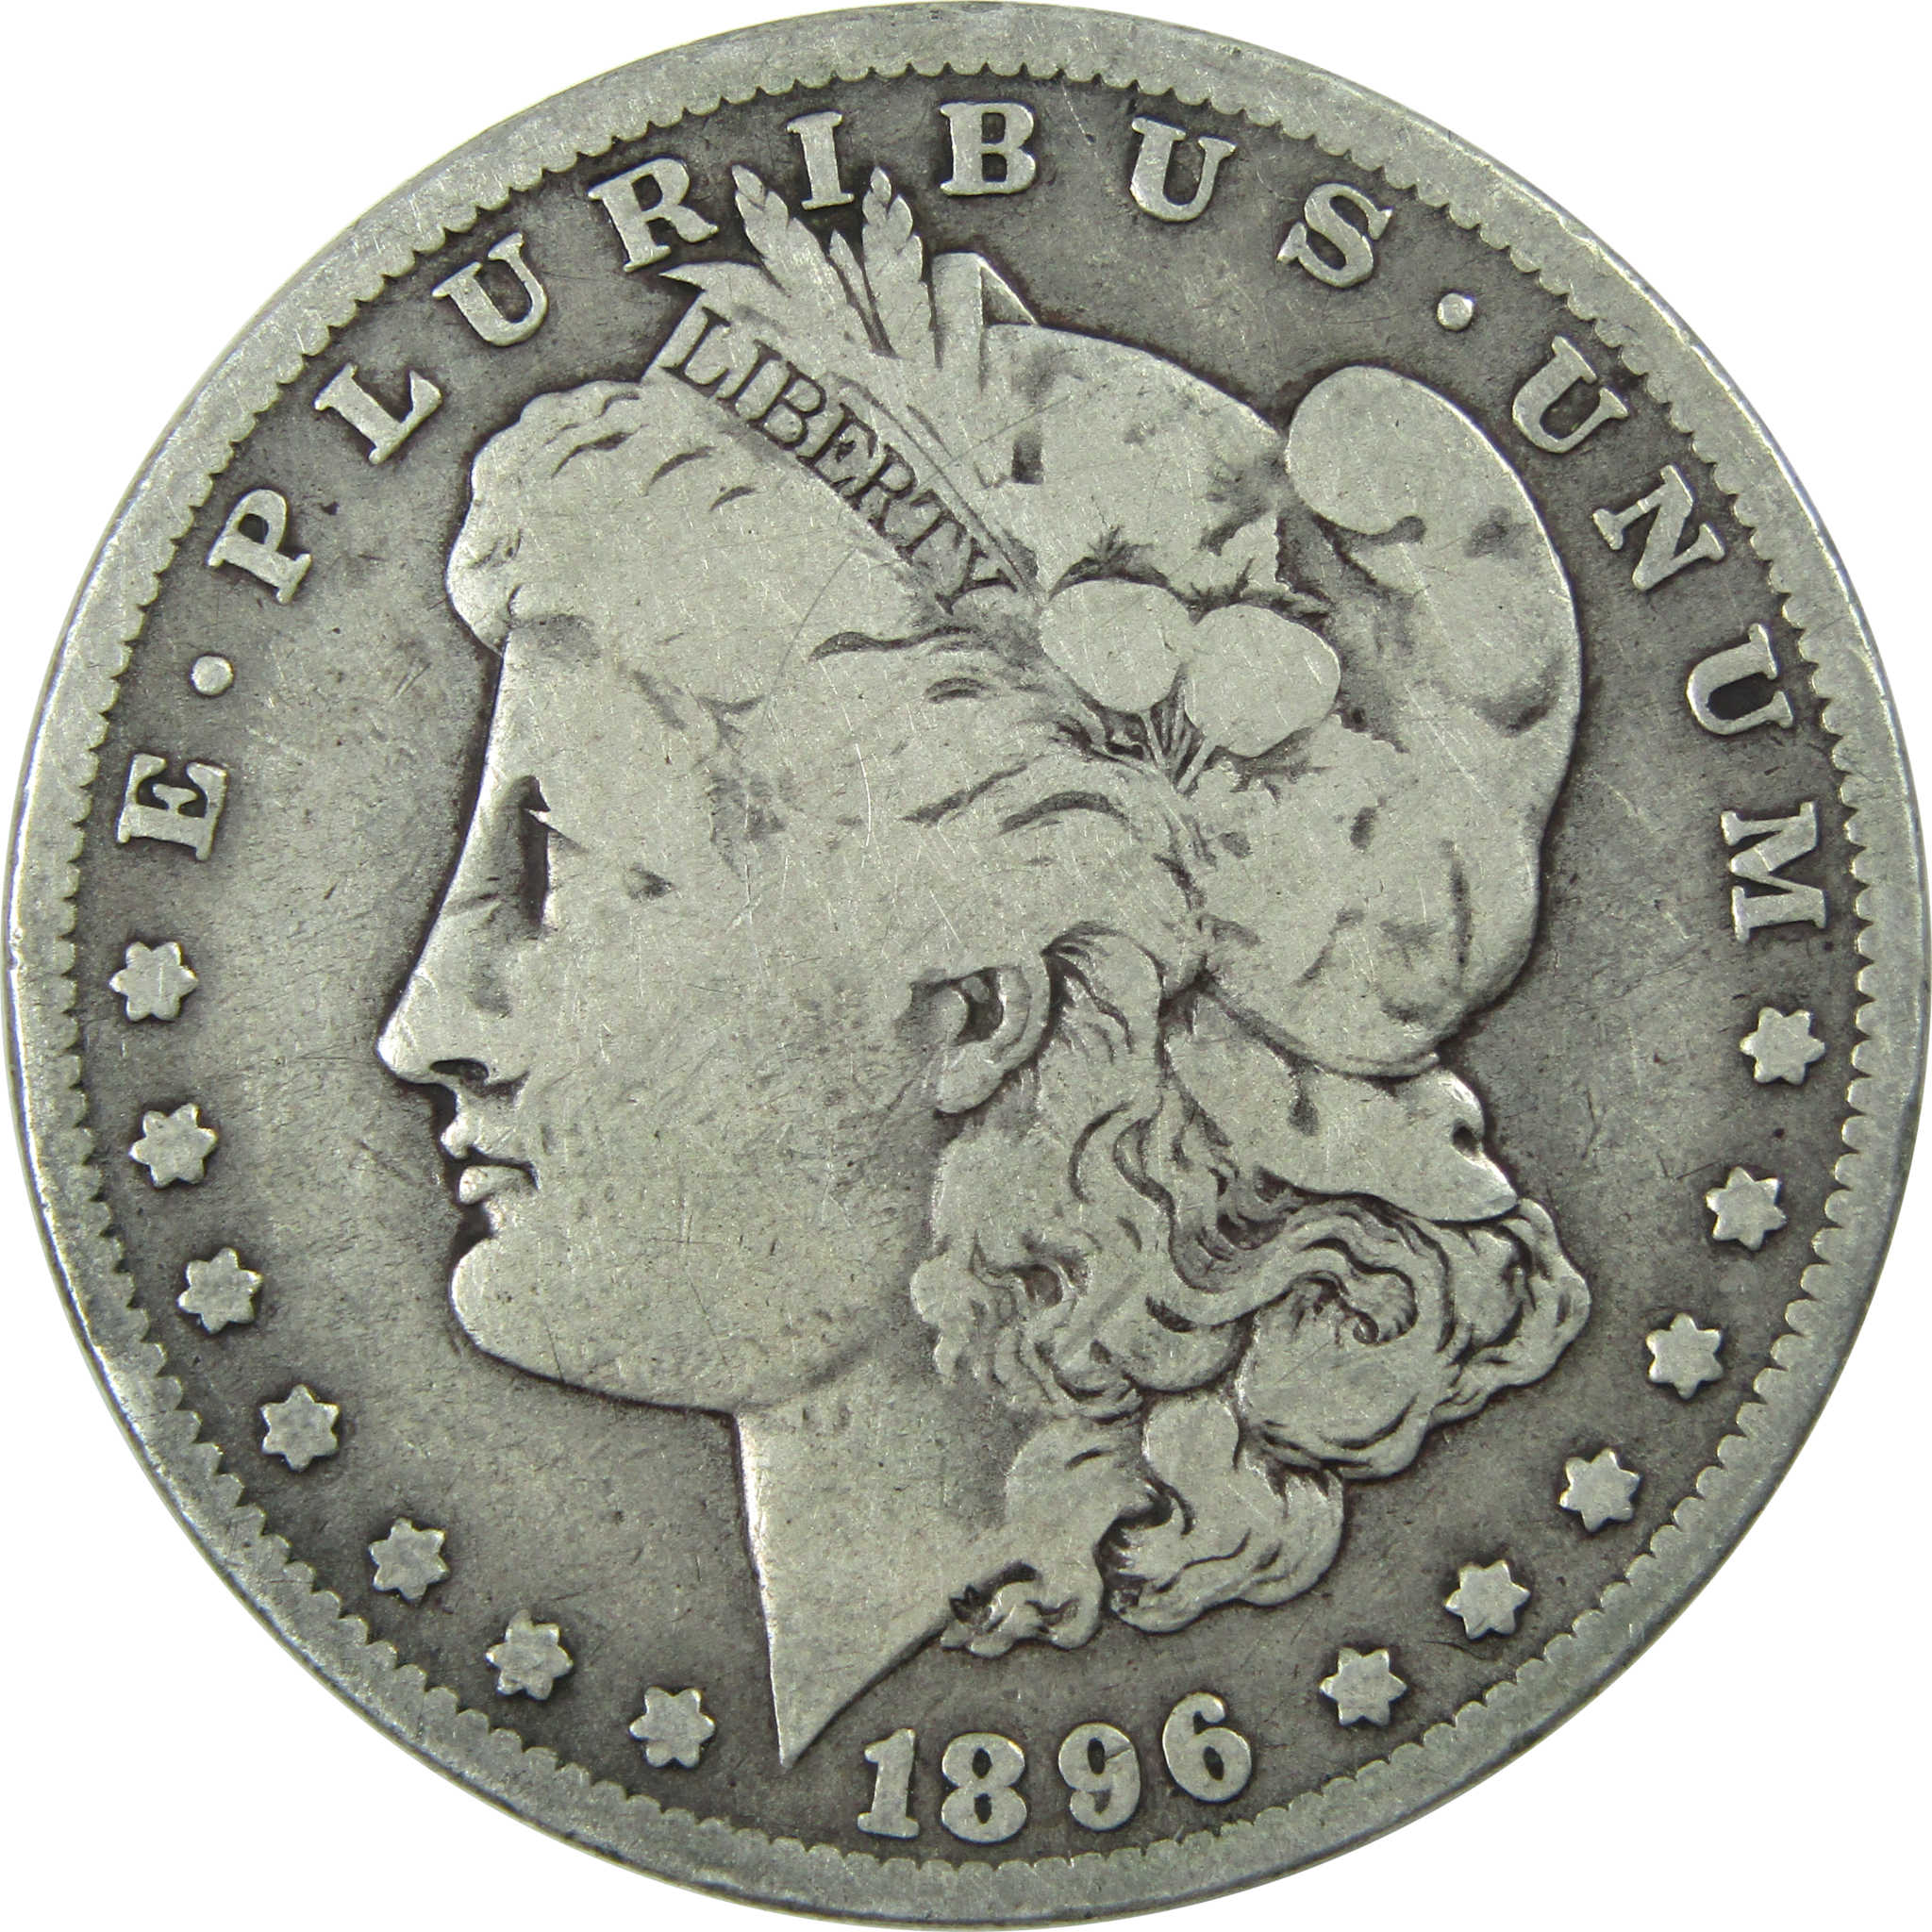 1896 O Morgan Dollar VG Very Good Silver $1 Coin SKU:I13725 - Morgan coin - Morgan silver dollar - Morgan silver dollar for sale - Profile Coins &amp; Collectibles